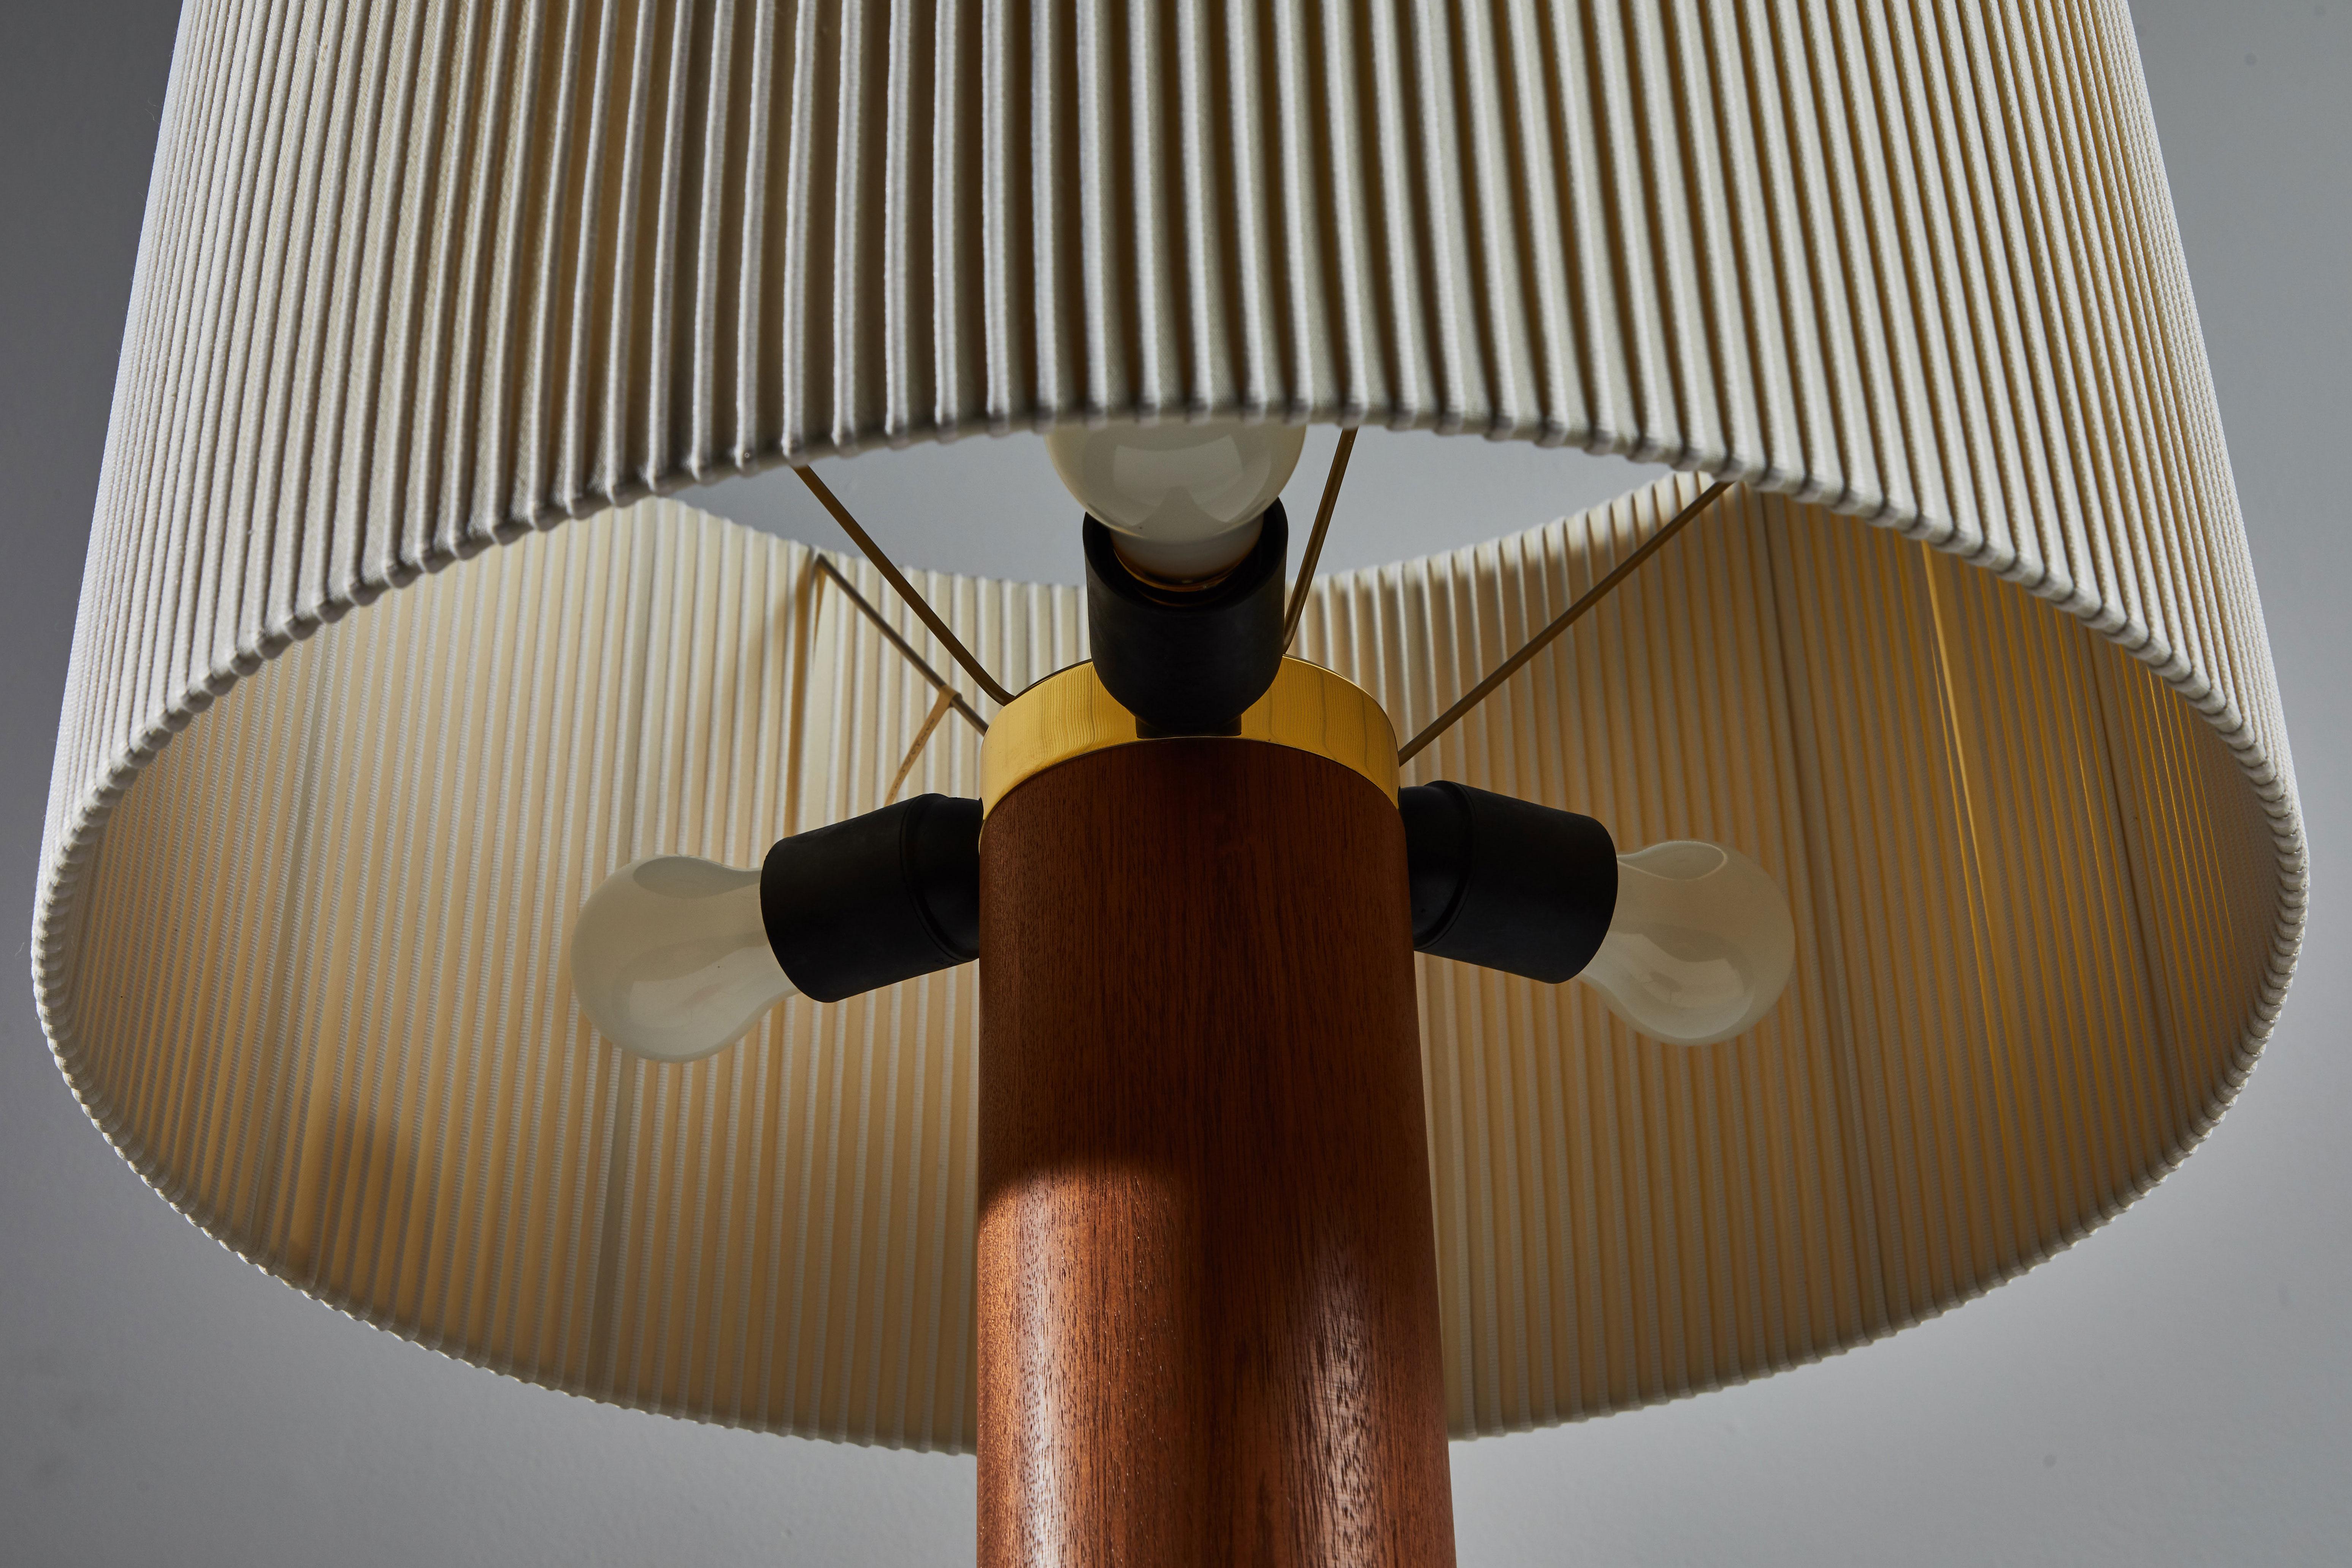 Contemporary Moragas Table Lamp by Antoni De Moragas for Santa & Cole